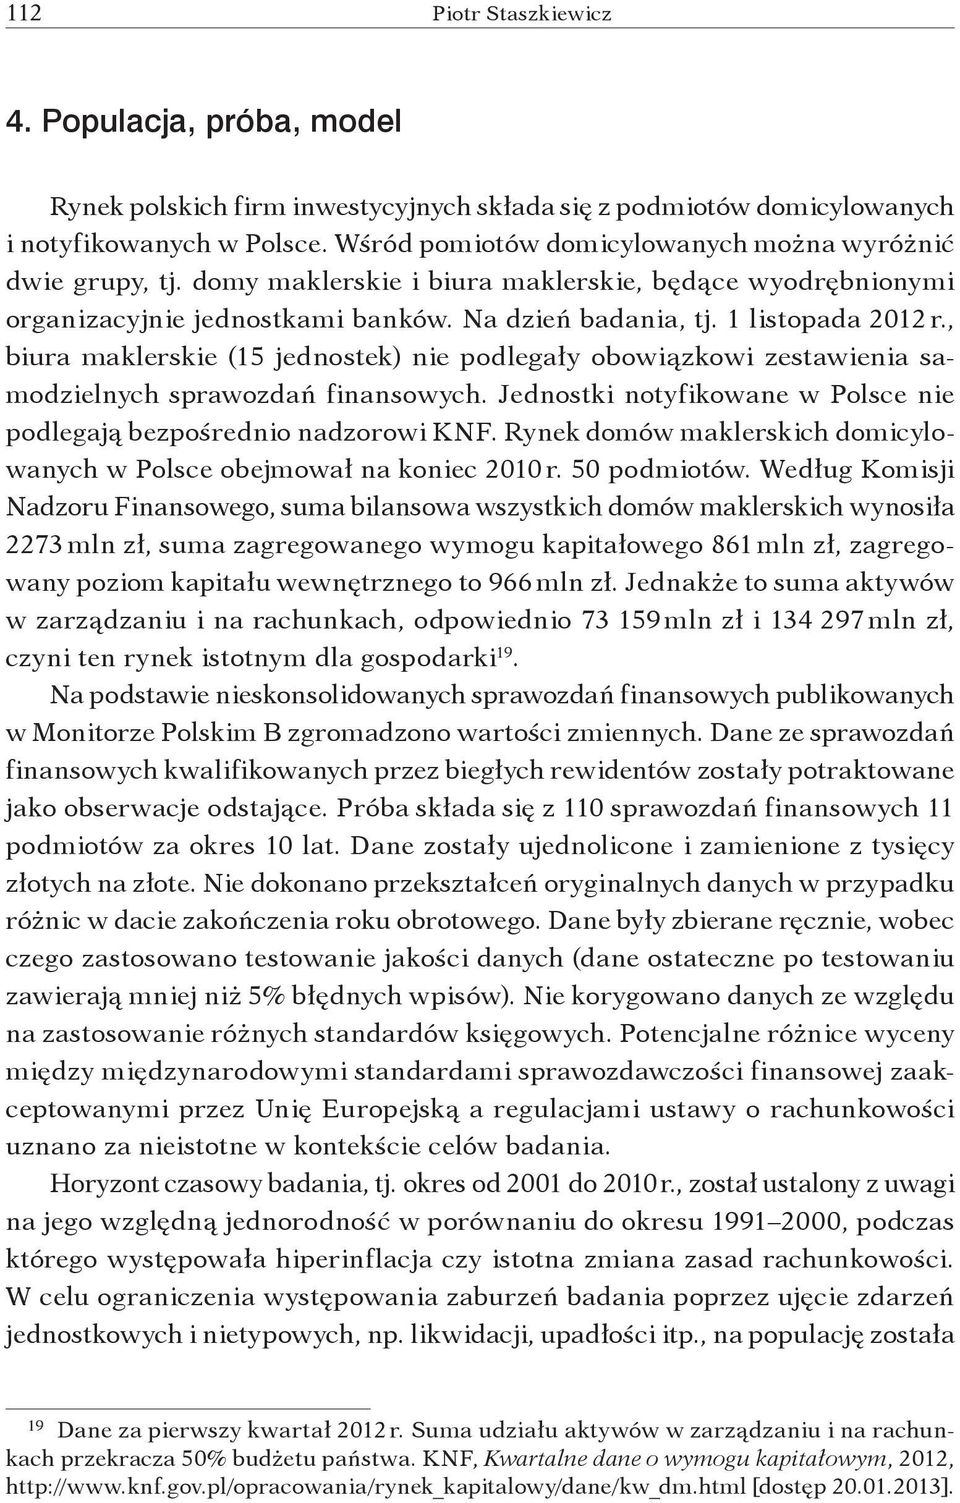 , biura maklerskie (15 jednostek) nie podlegały obowiązkowi zestawienia samodzielnych sprawozdań finansowych. Jednostki notyfikowane w Polsce nie podlegają bezpośrednio nadzorowi KNF.